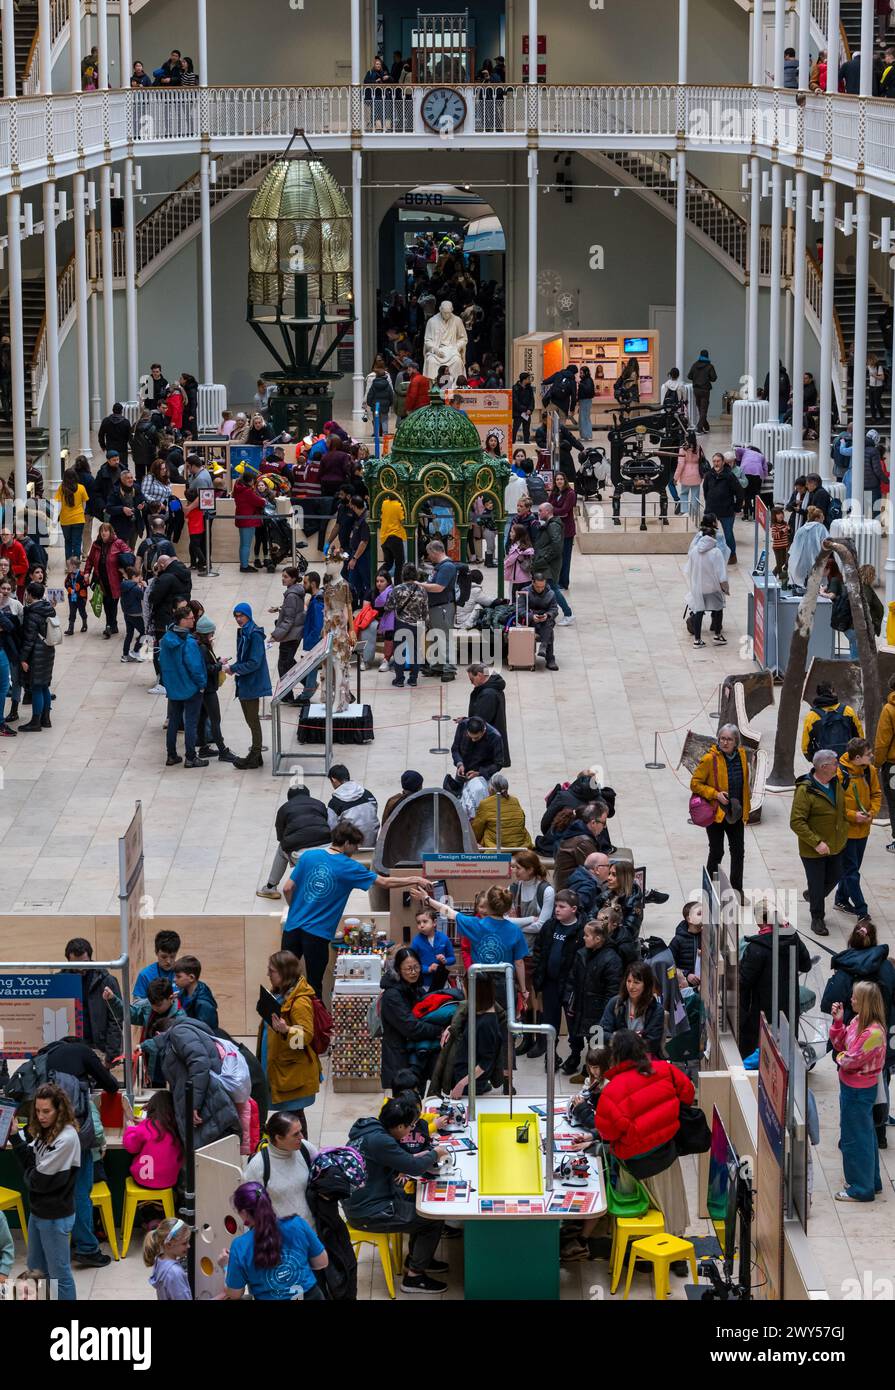 Überfüllte große Galerie während der Osterferien und Aktivitäten des Science Festivals für Kinder, National Museum of Scotland, Edinburgh, Großbritannien Stockfoto